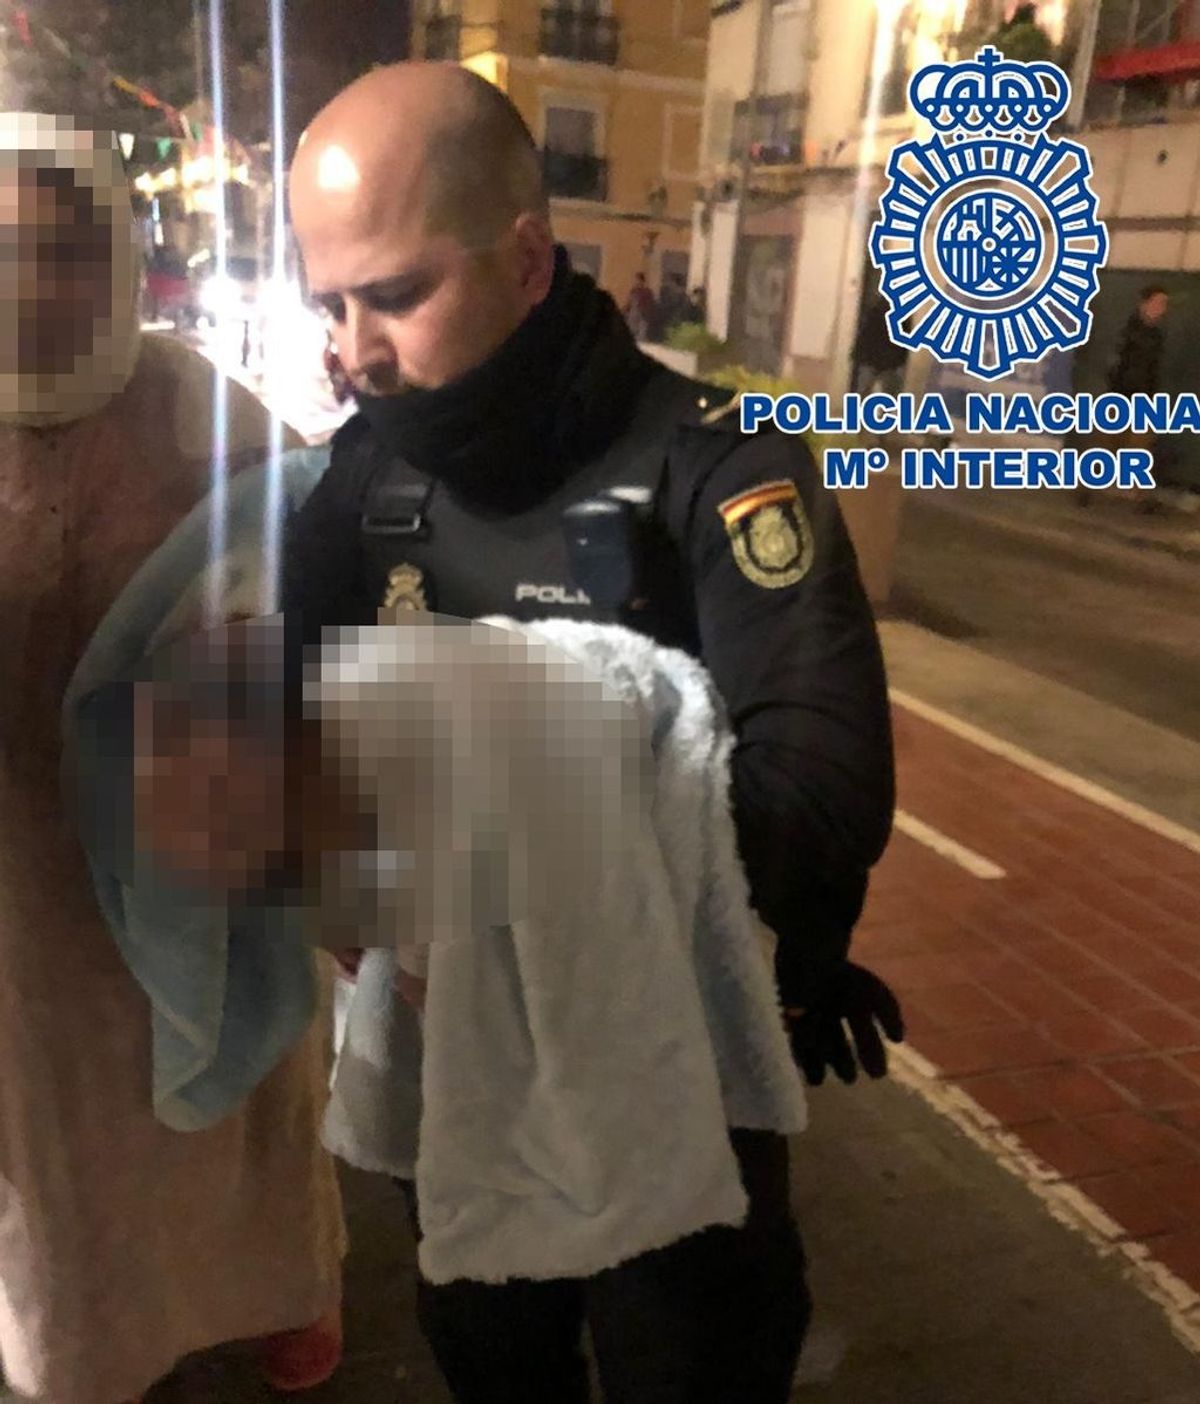 Policías salvan en Valencia a un bebé de dos meses en parada cardiorrespiratoria tras 20 minutos de reanimación